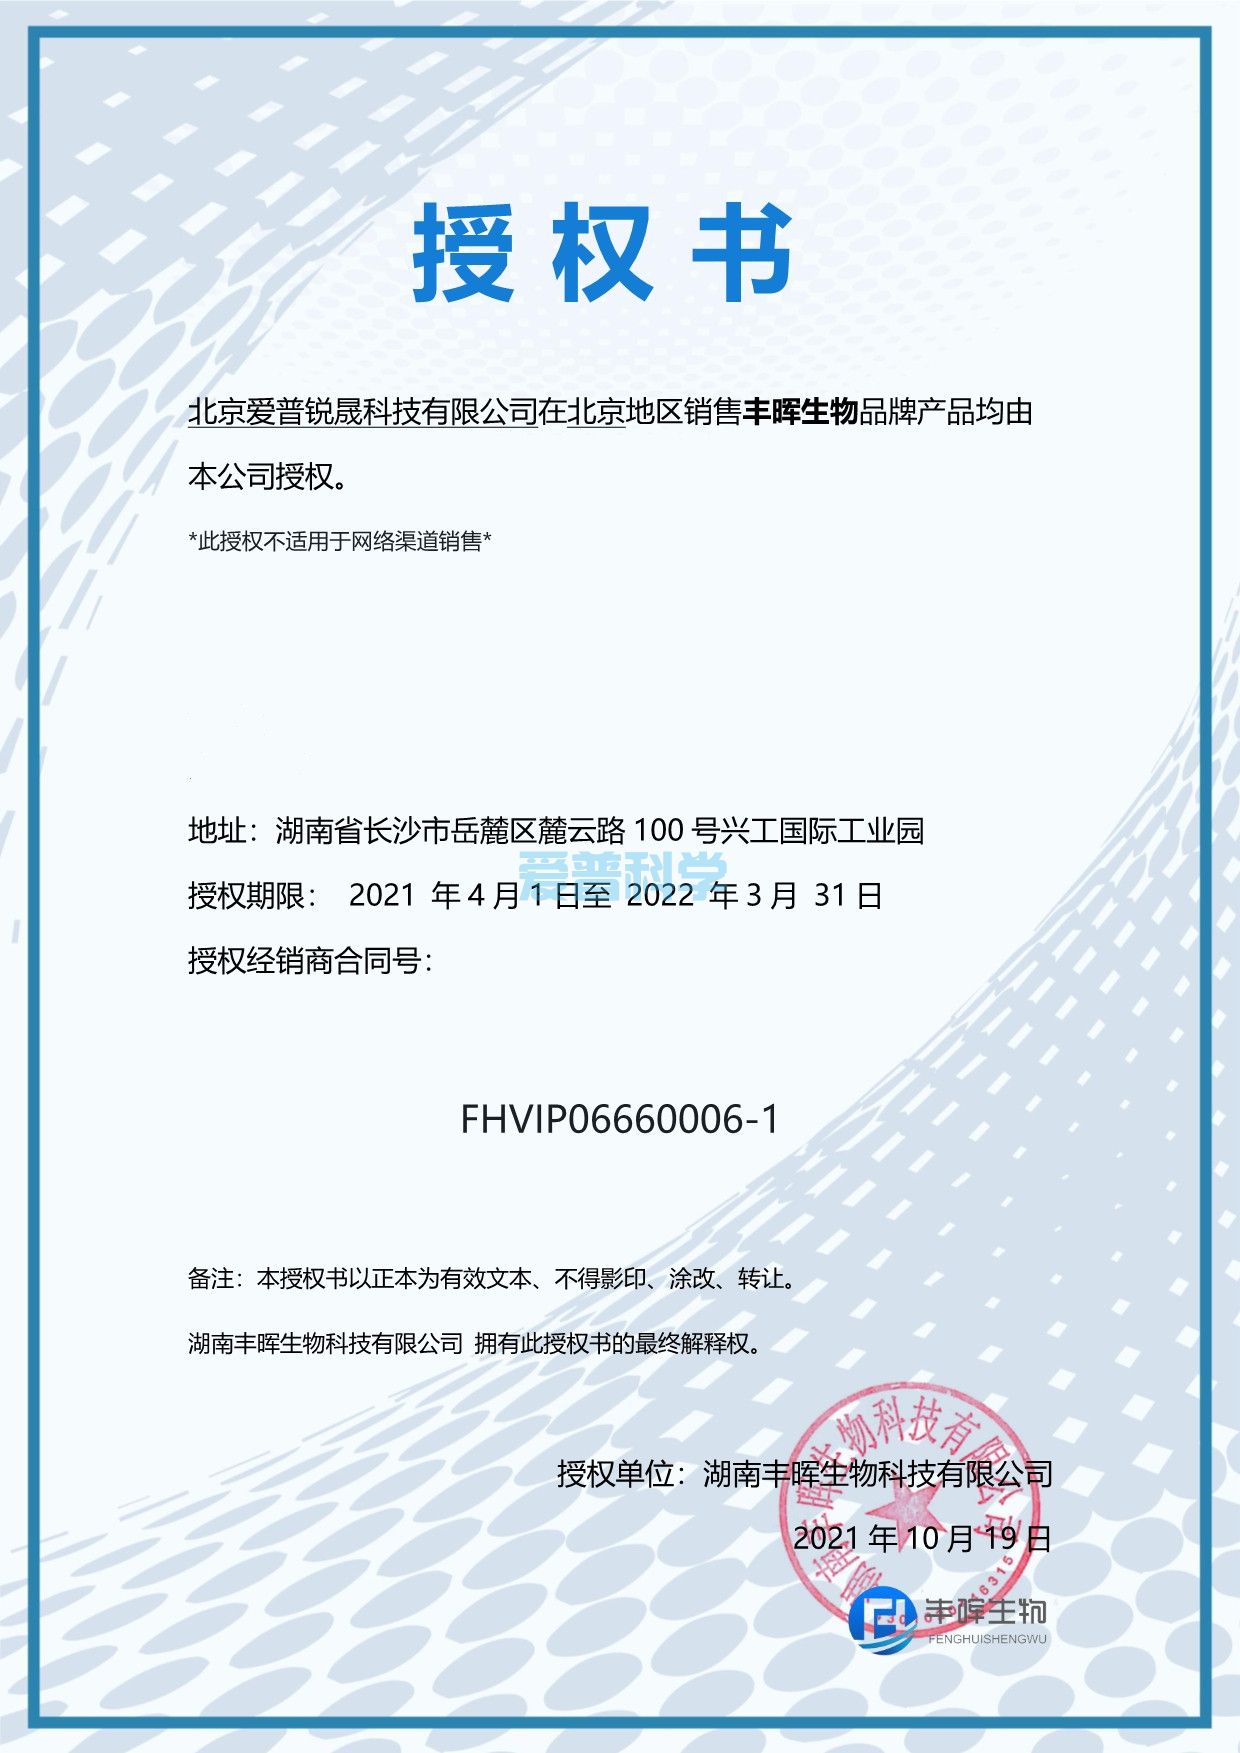 爱普科学携手签约“丰晖生物”品牌为北京地区授权一级代理(图1)